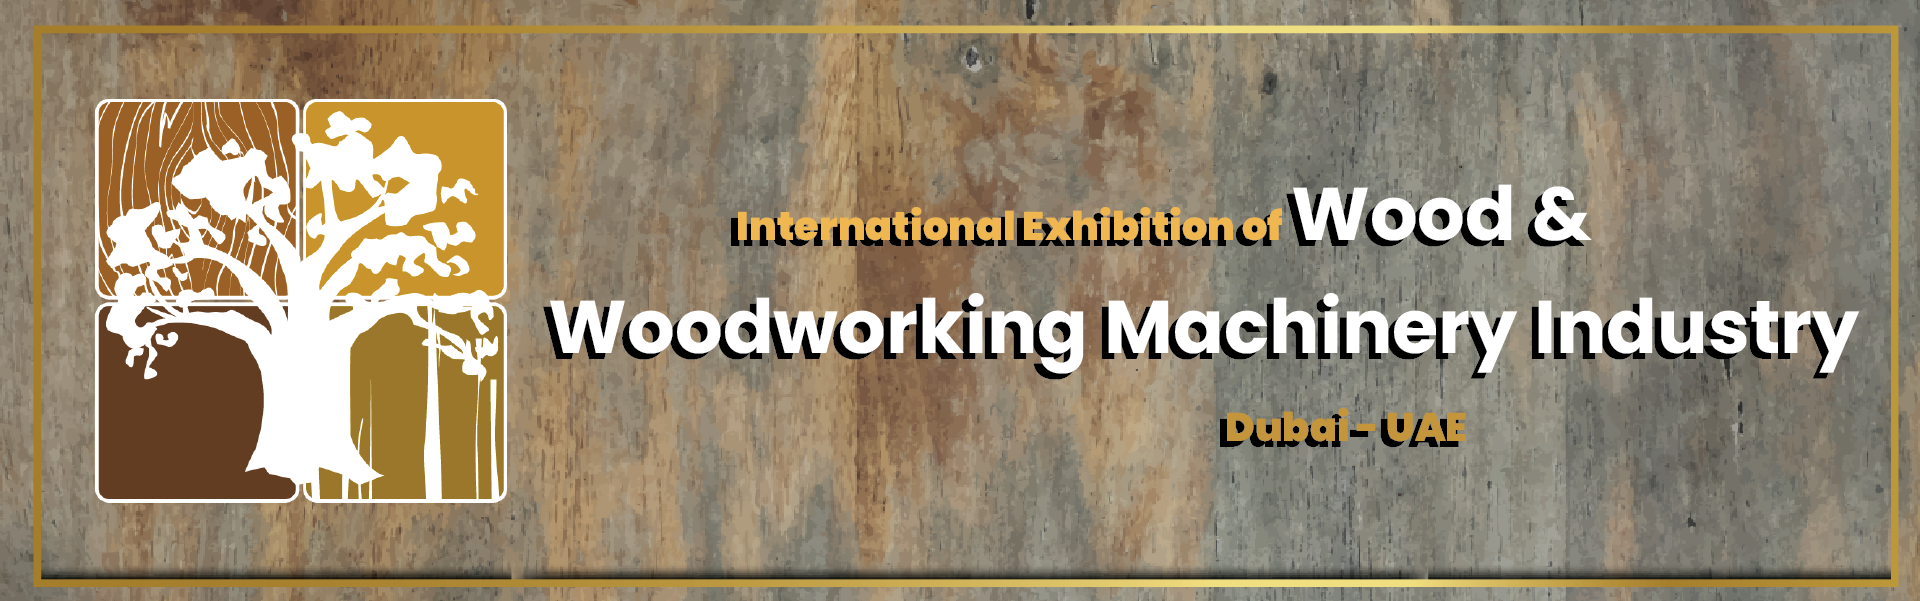 Wood & Wood Machinery (WoodShow) Exhibition Dubai United Arab Emirates